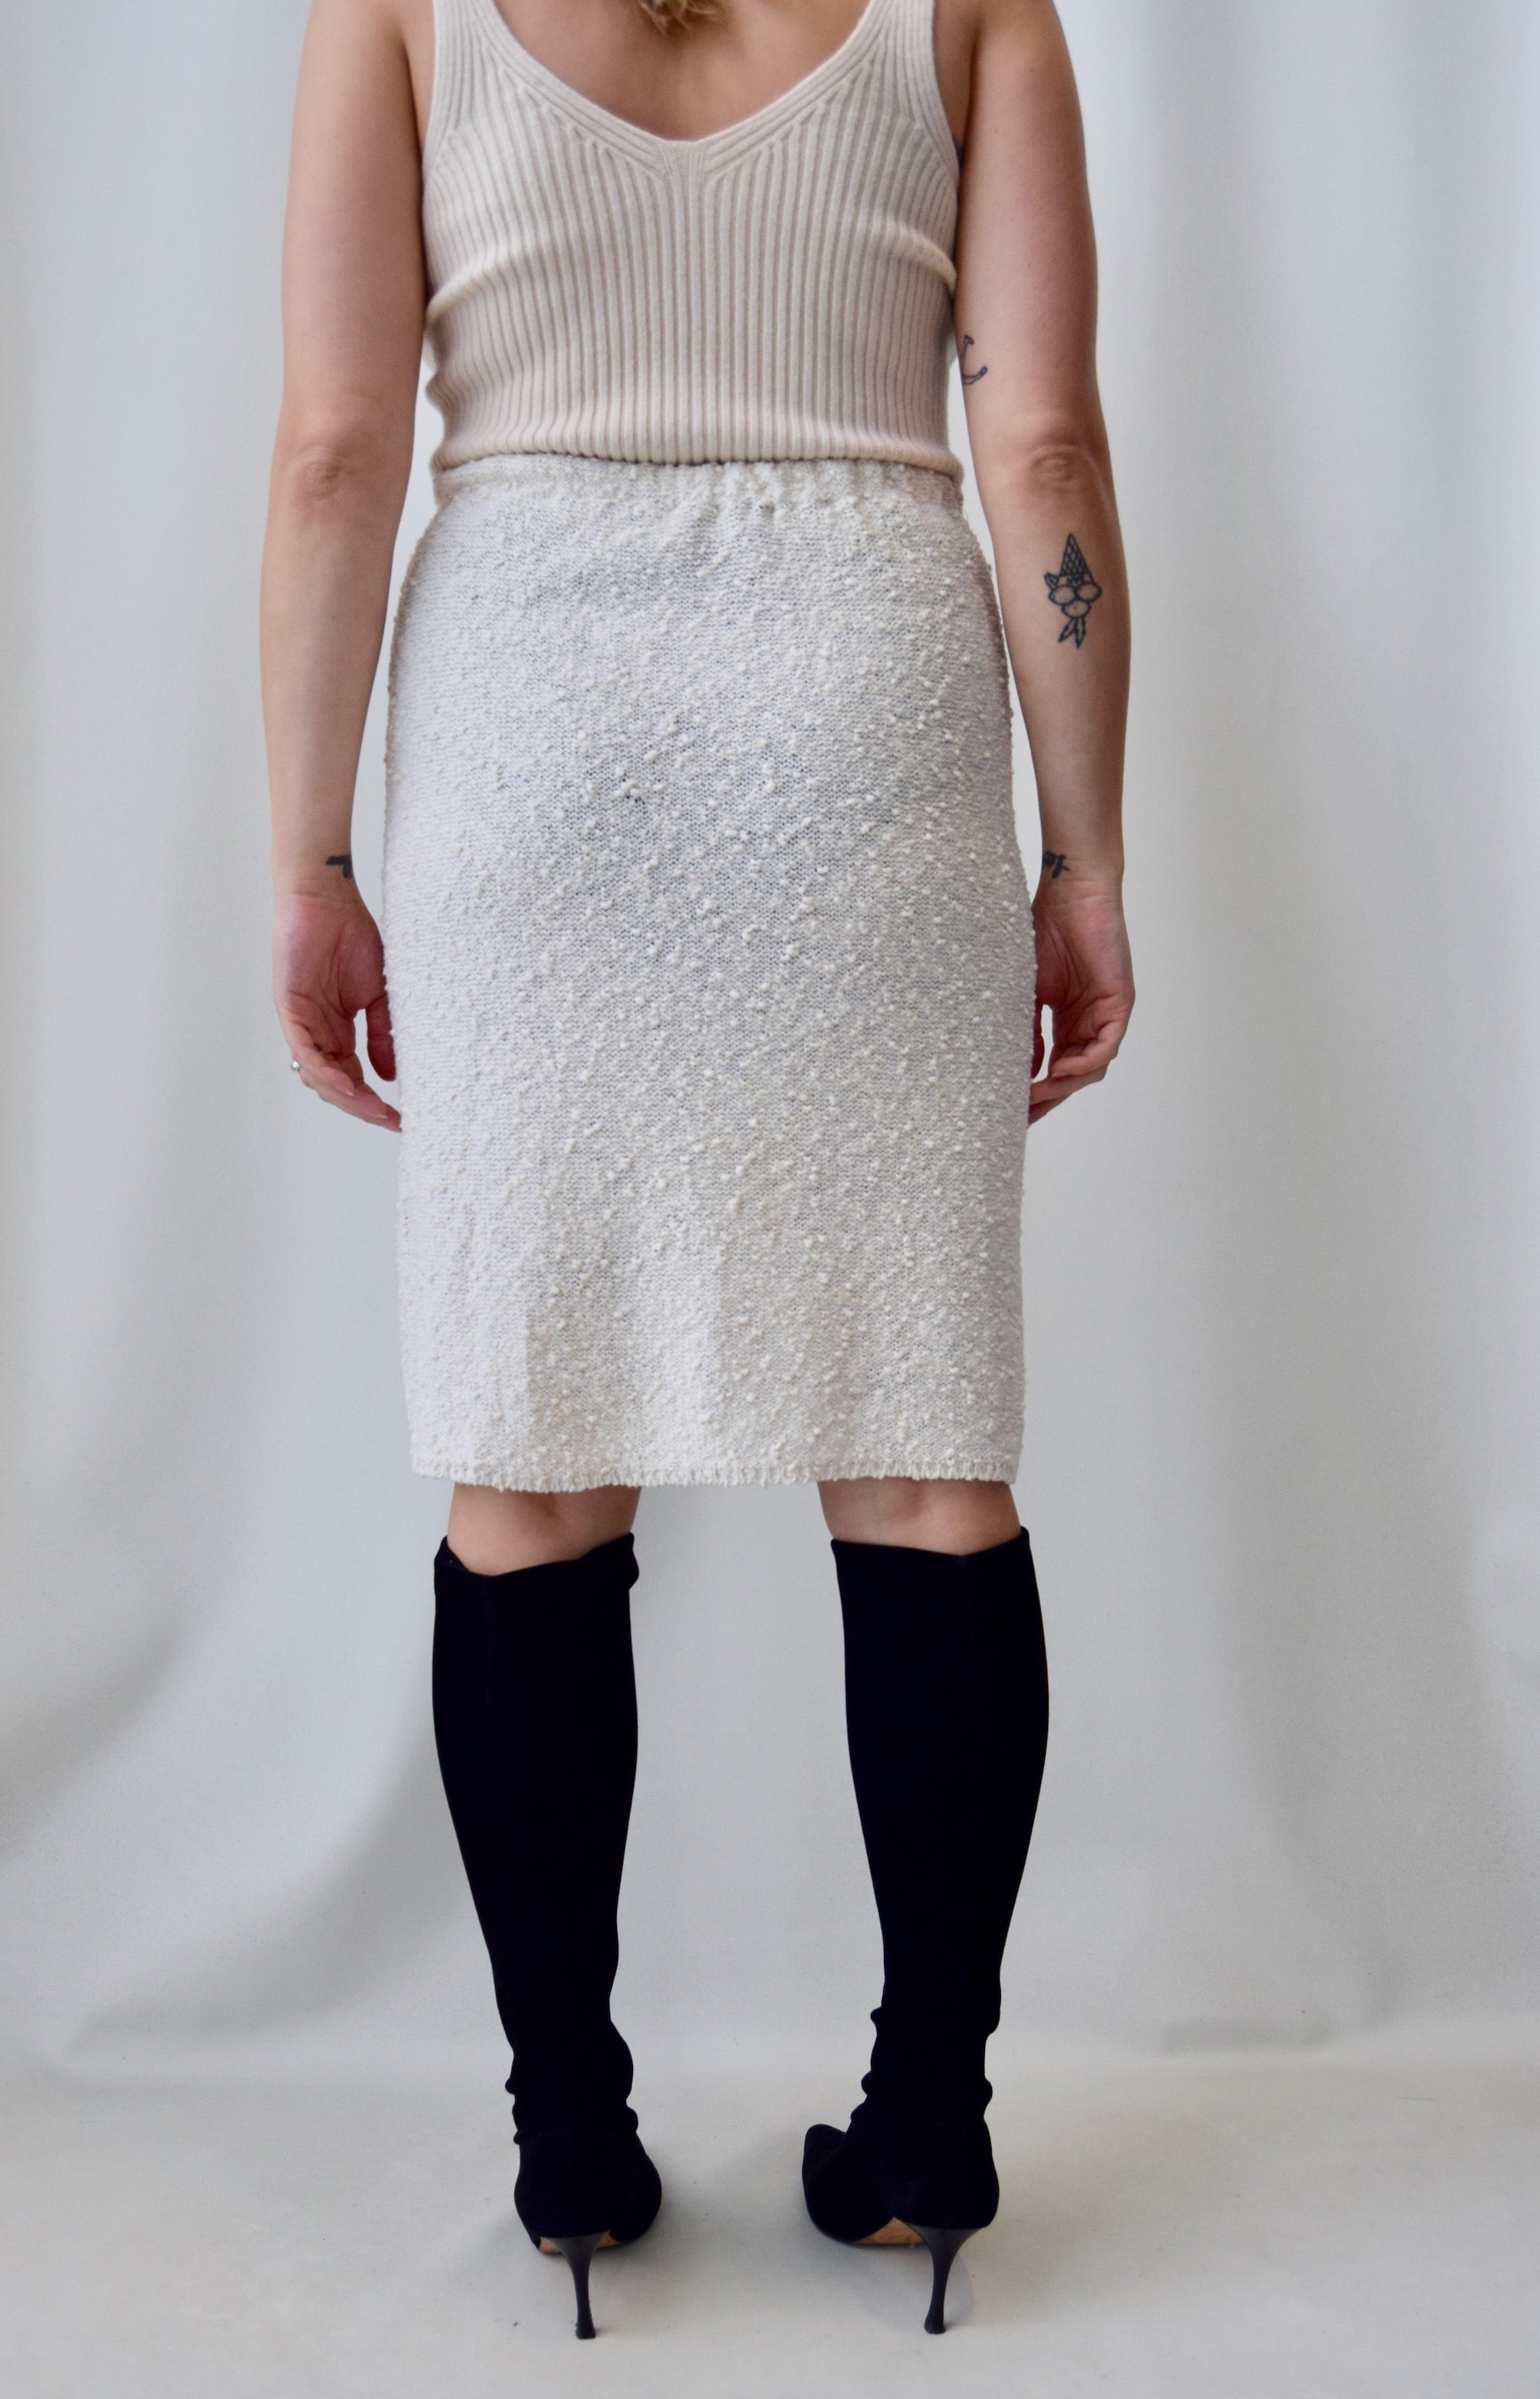 Textured Knit Skirt